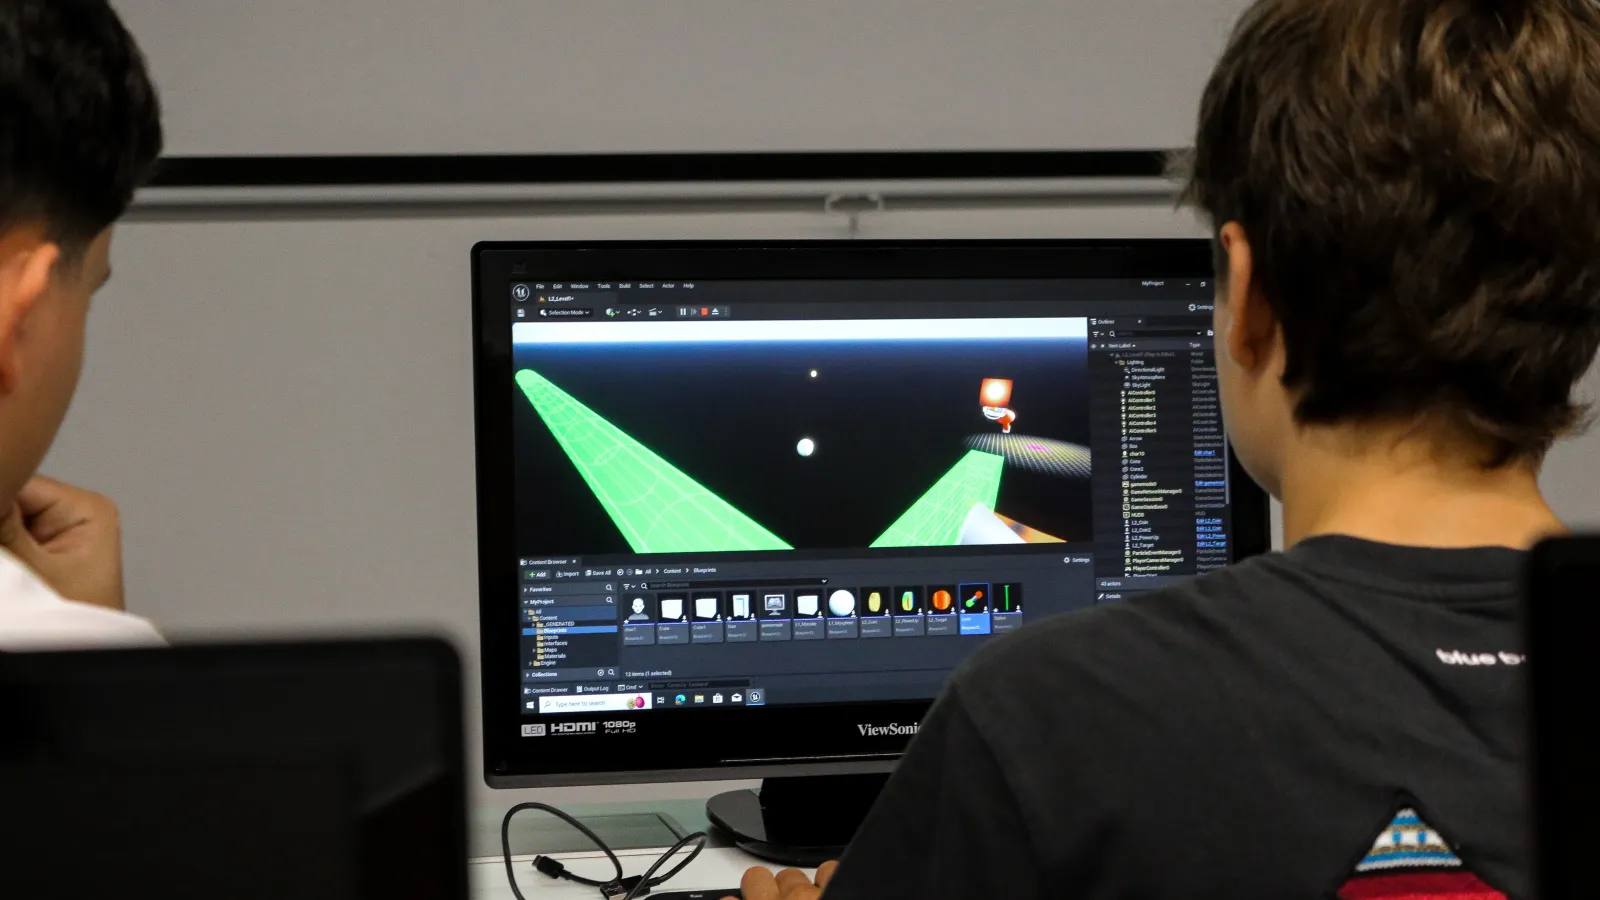 Dos estudiantes que asisten al taller trabajan en la misma computadora usando el editor de Unreal Engine. El proyecto muestra un escenario oscuro y laberíntico.